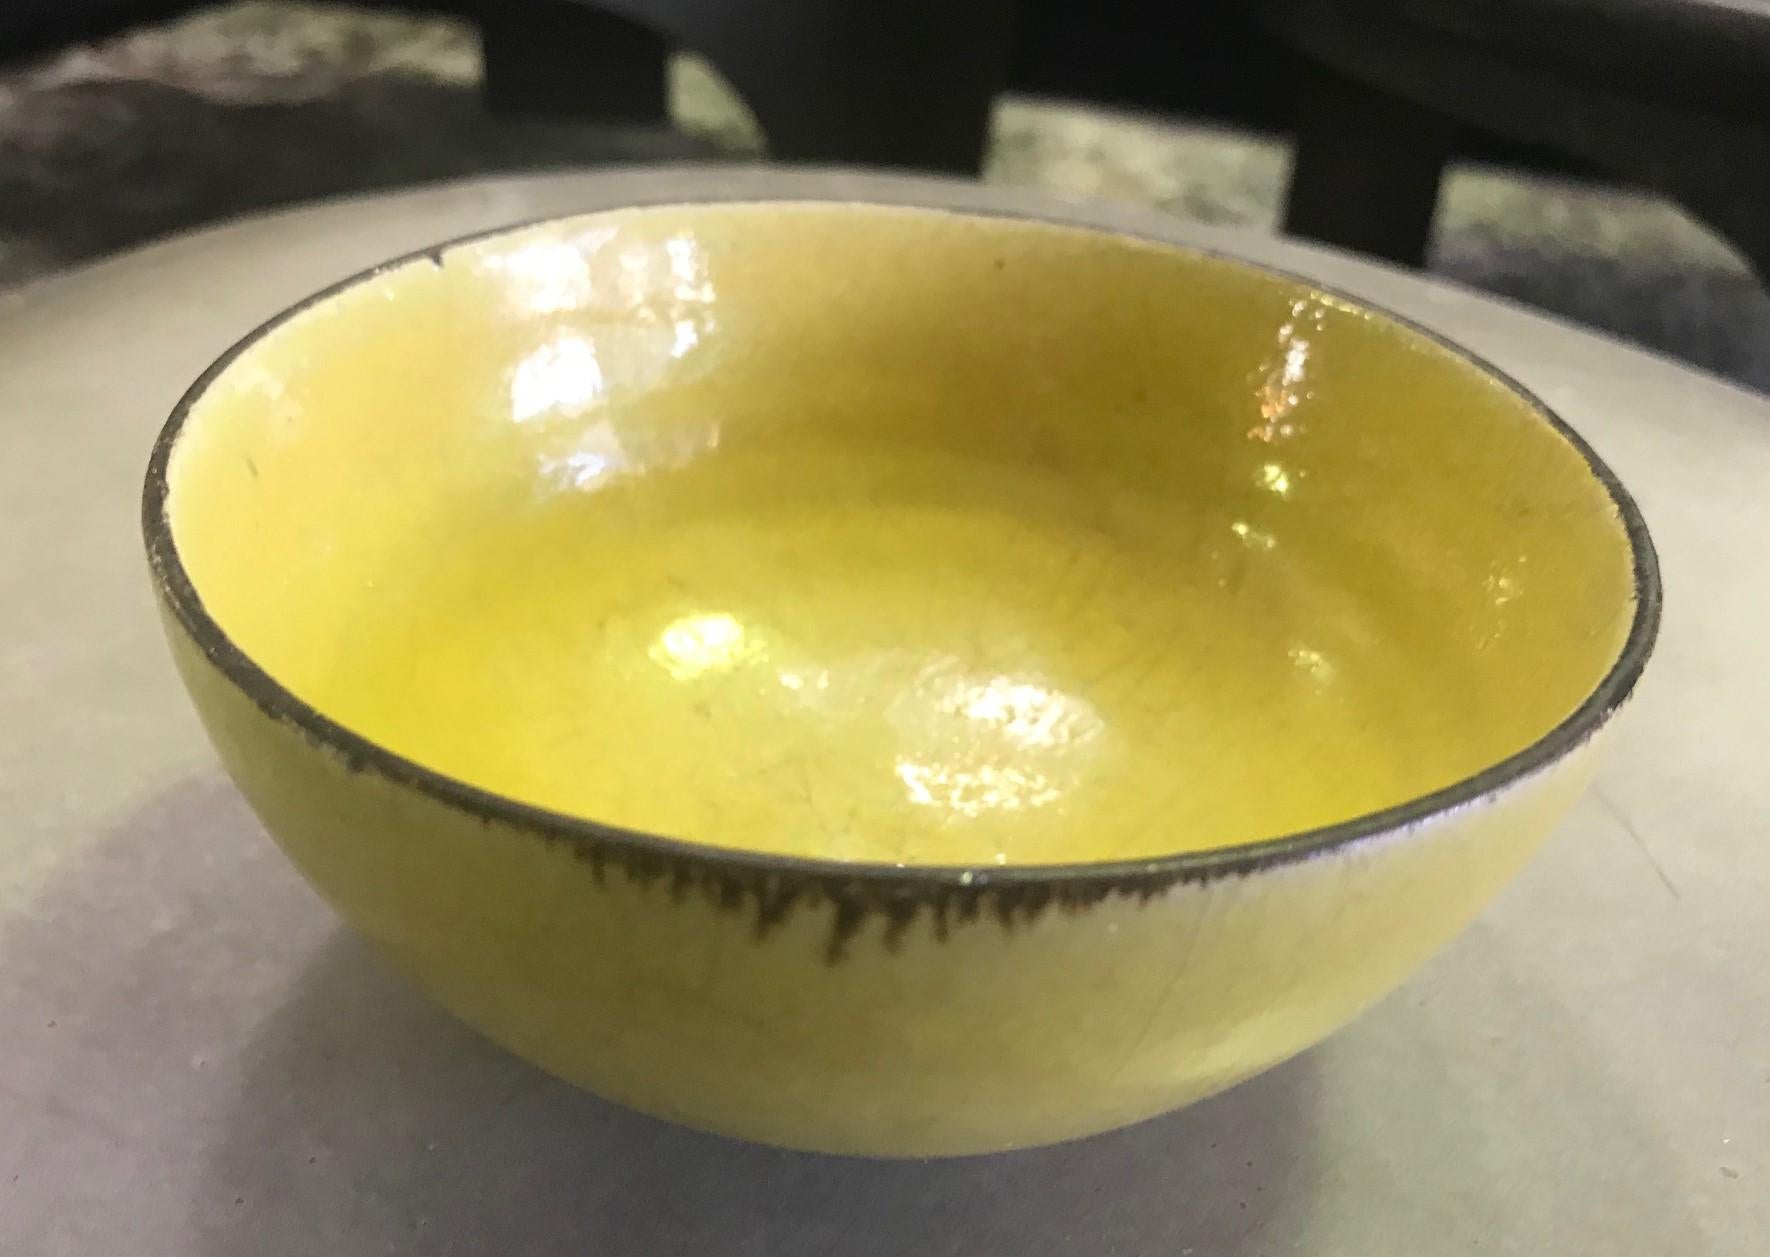 Un magnifique bol en grès émaillé jaune moutarde avec bord en manganèse par les célèbres potiers européens Lucie Ries & Hans Coper.

Le bol est signé avec les sceaux imprimés de chaque artiste sur la base.

Un must pour tout collectionneur des